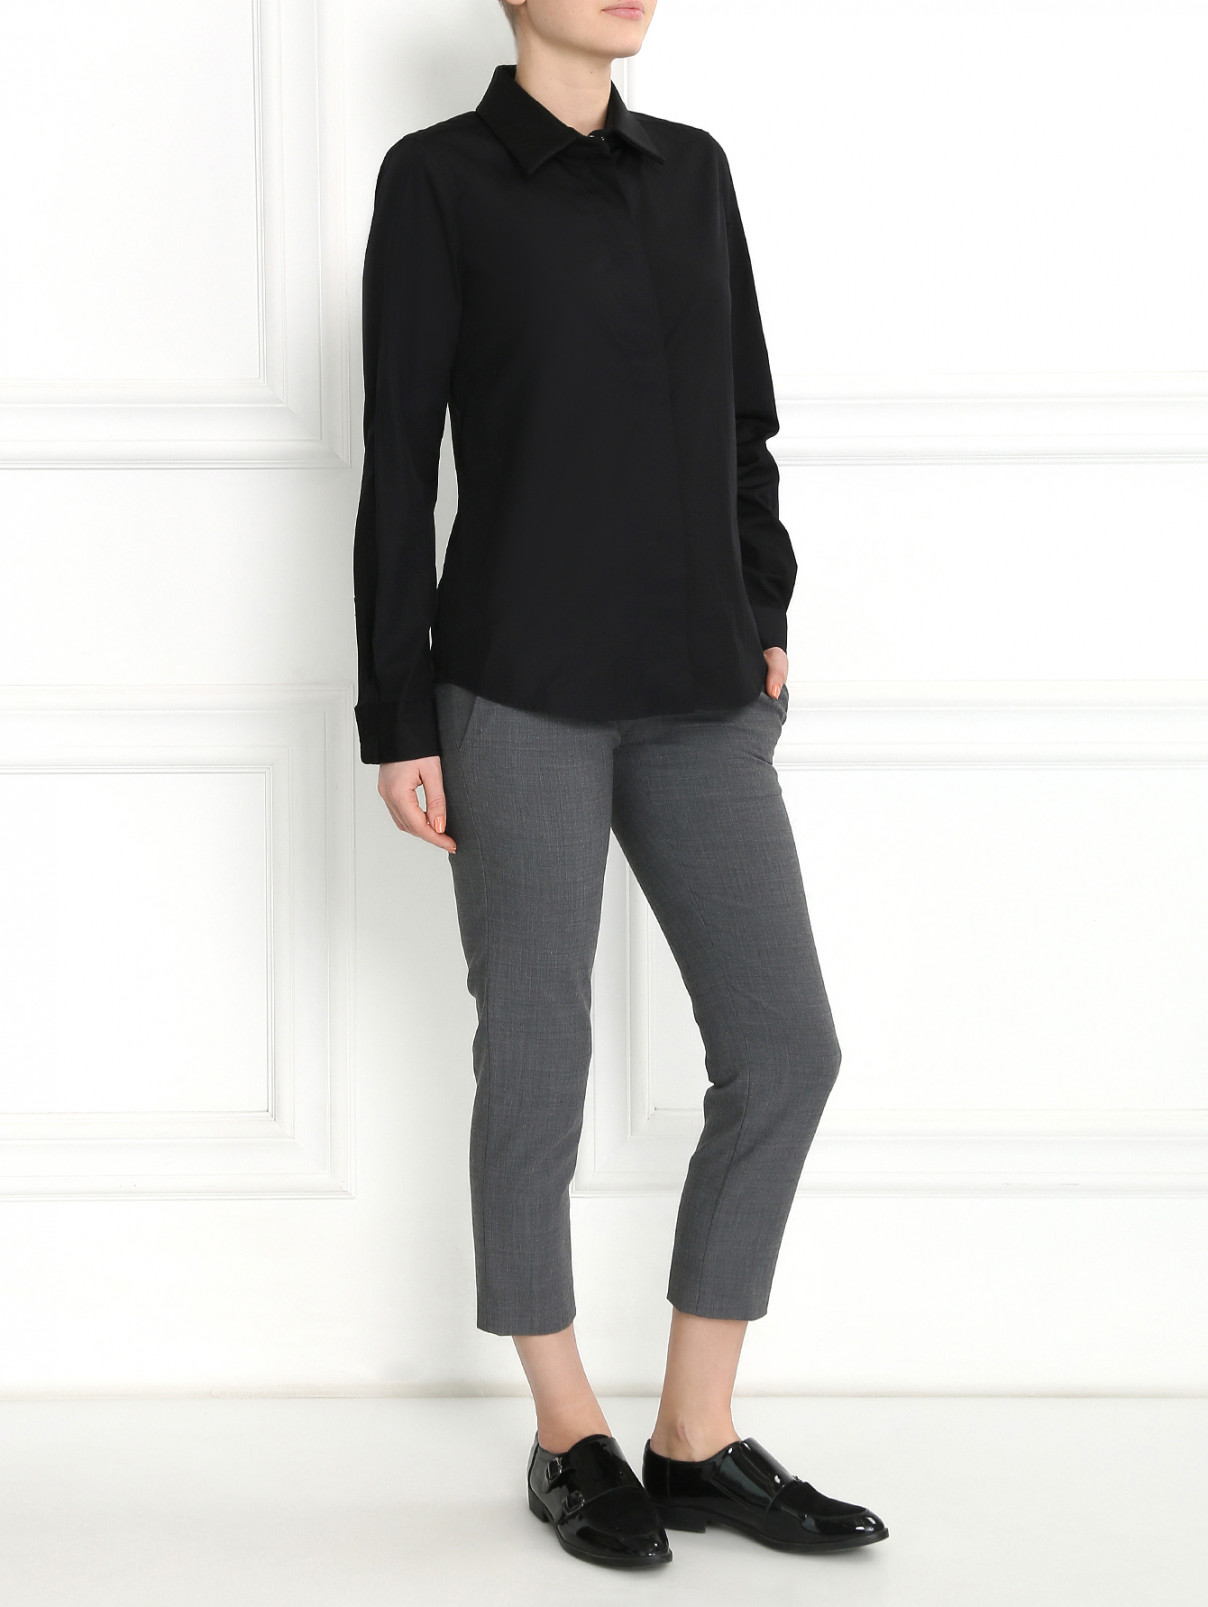 Блуза с воротником Max Mara  –  Модель Общий вид  – Цвет:  Черный